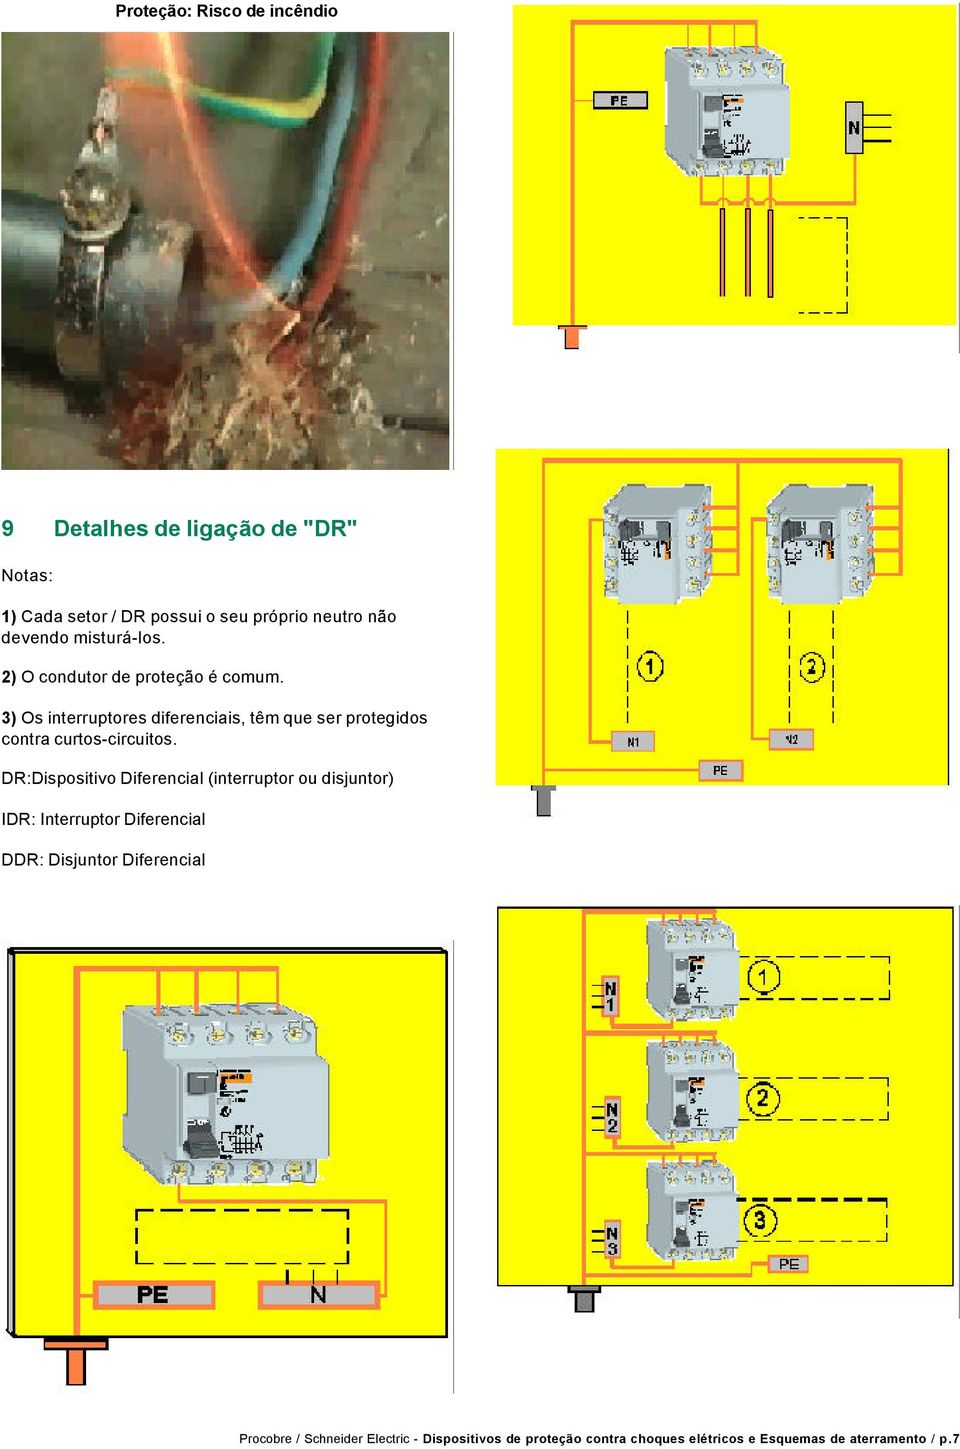 3) Os interruptores diferenciais, têm que ser protegidos contra curtos-circuitos.